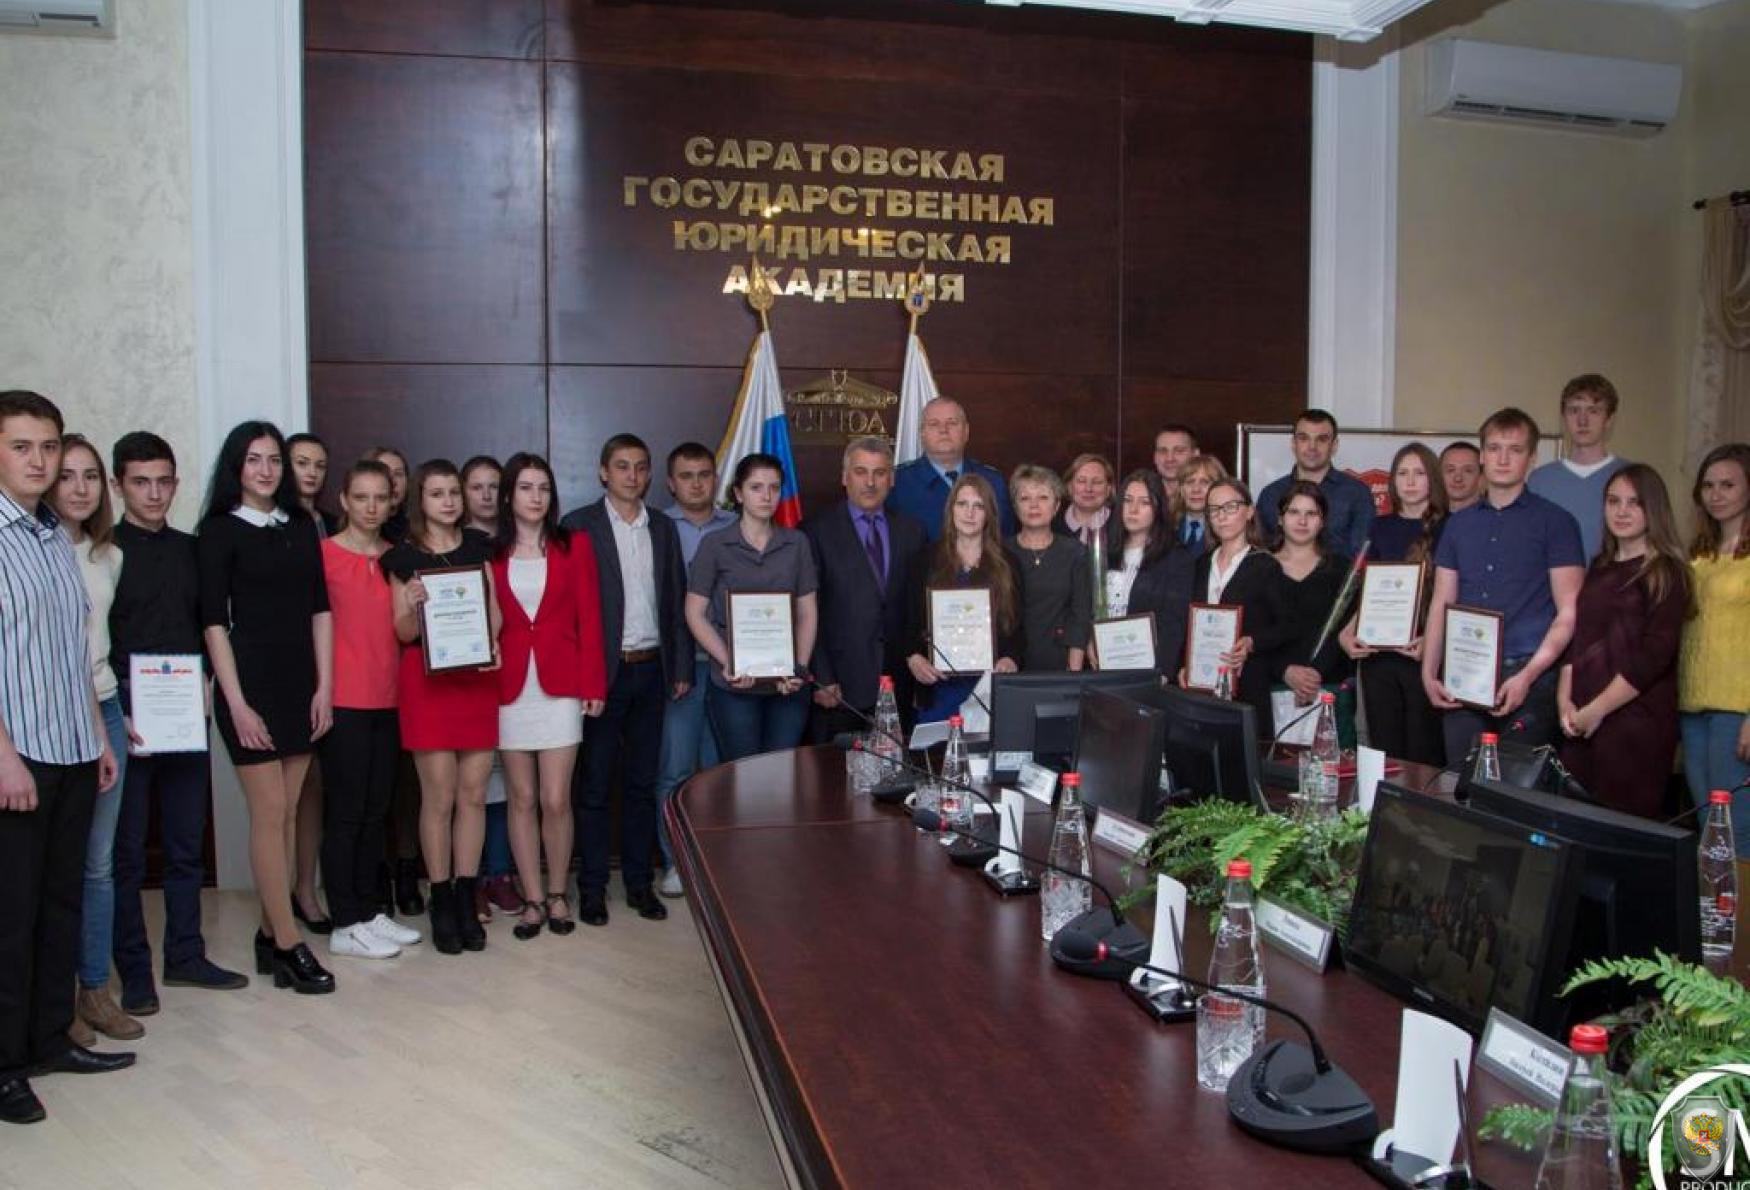 Лауреаты II Межвузовского конкурса по противодействию терроризму в г. Саратове и члены жюри.